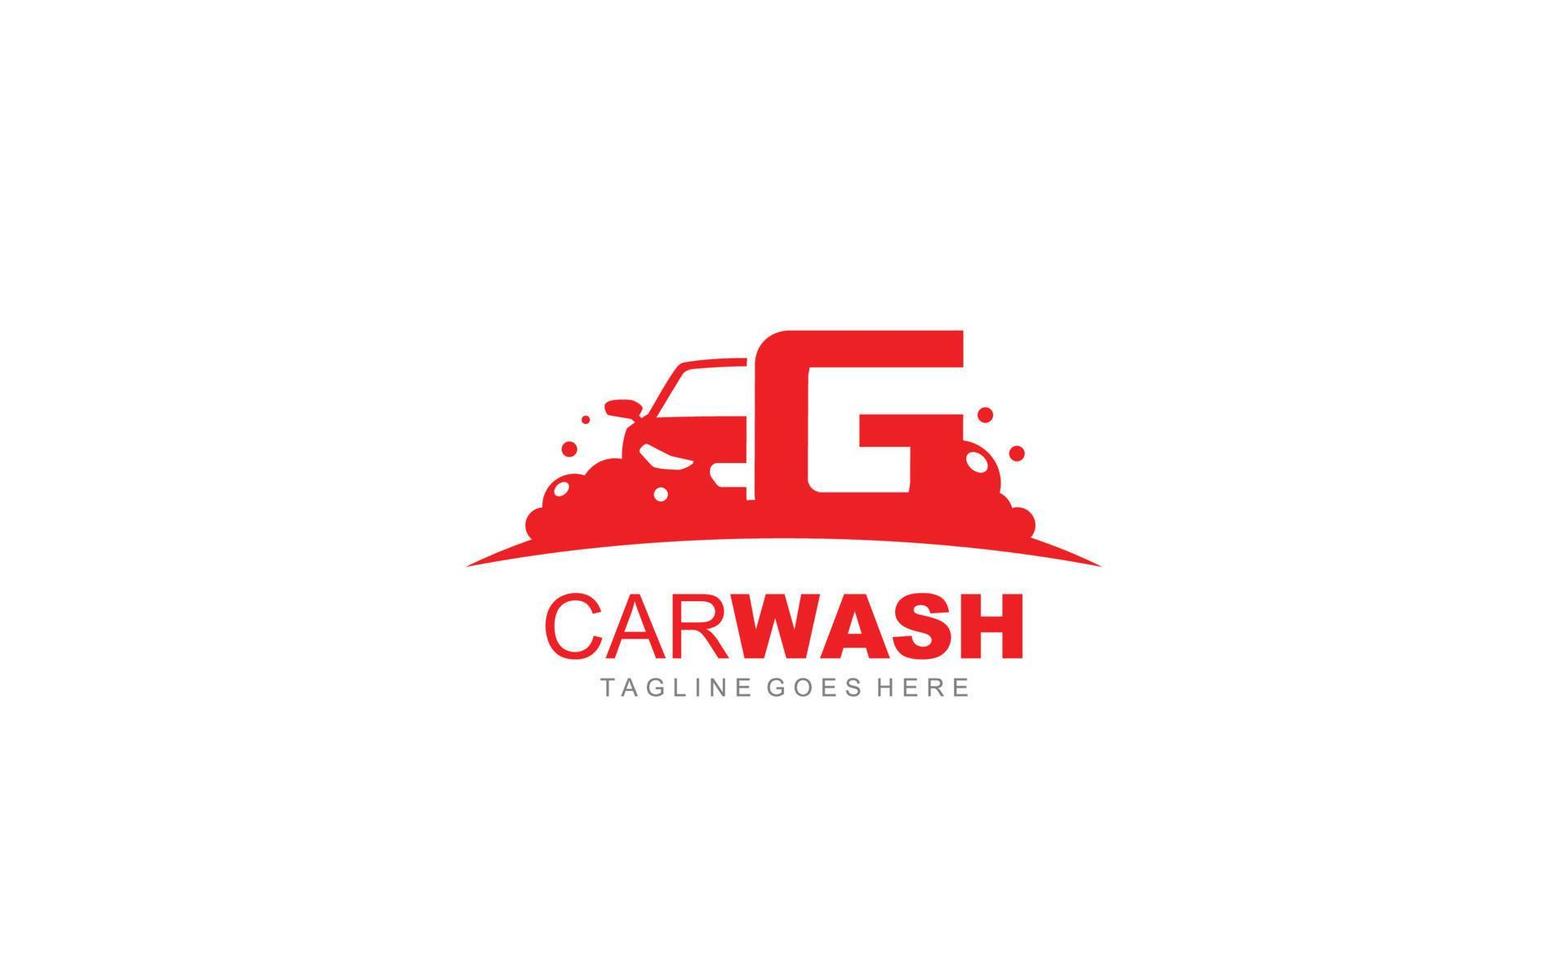 g logo carwash voor identiteit. auto sjabloon vector illustratie voor uw merk.